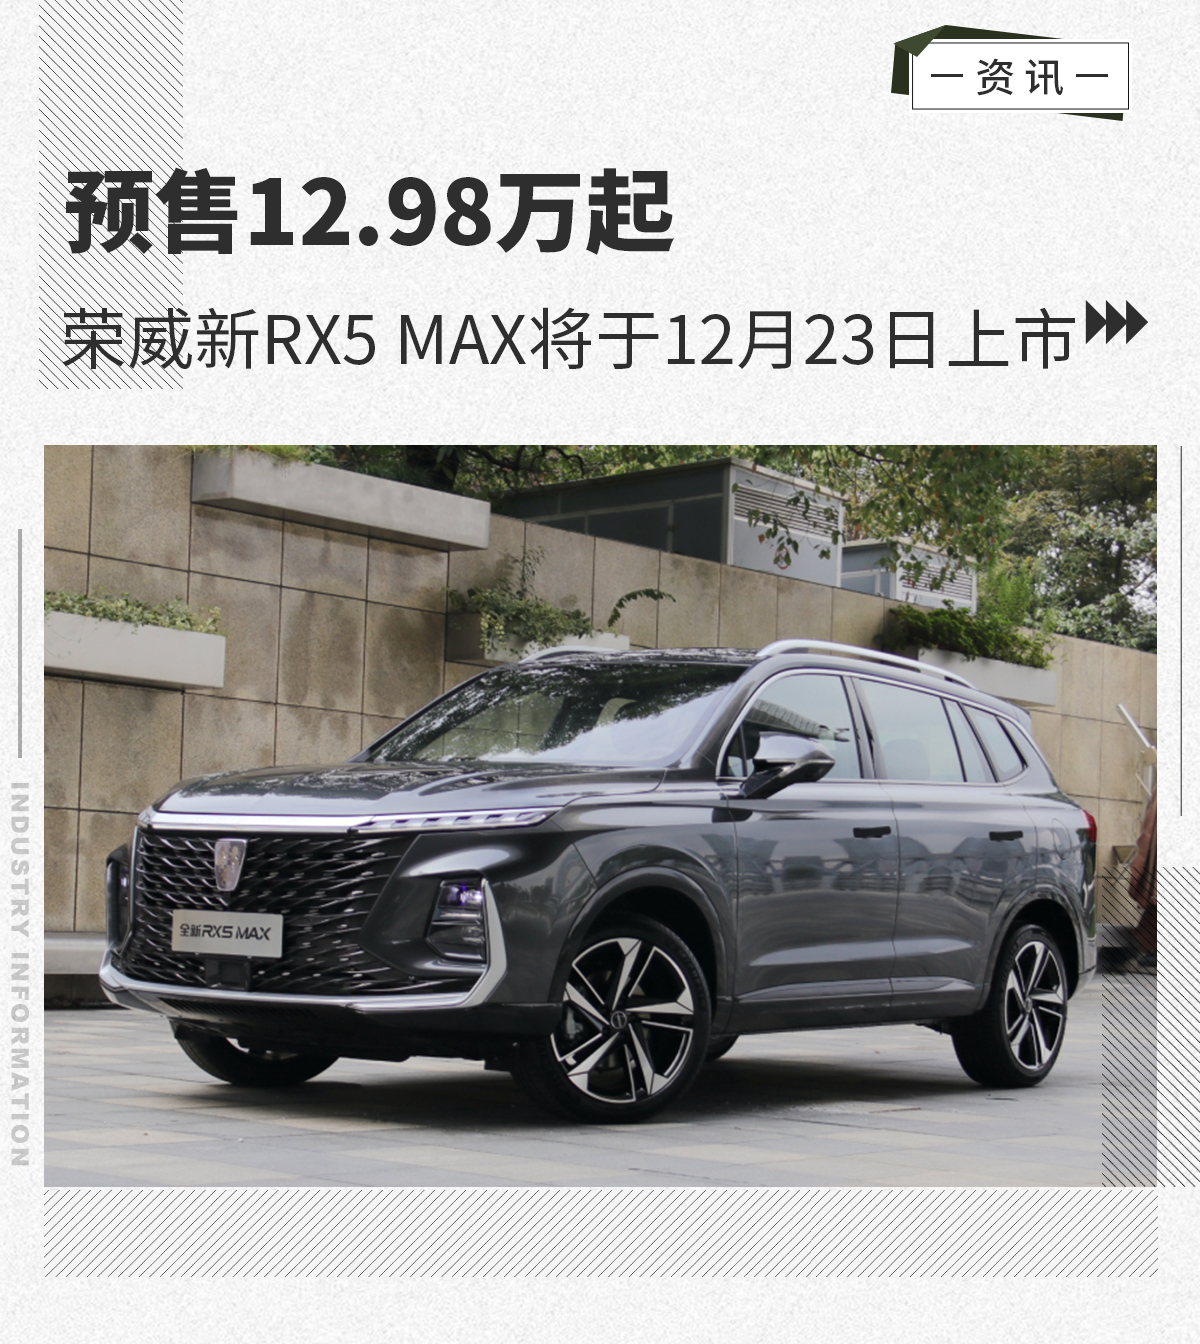 12月23日荣威新RX5 MAX将上市 预售12.98万起